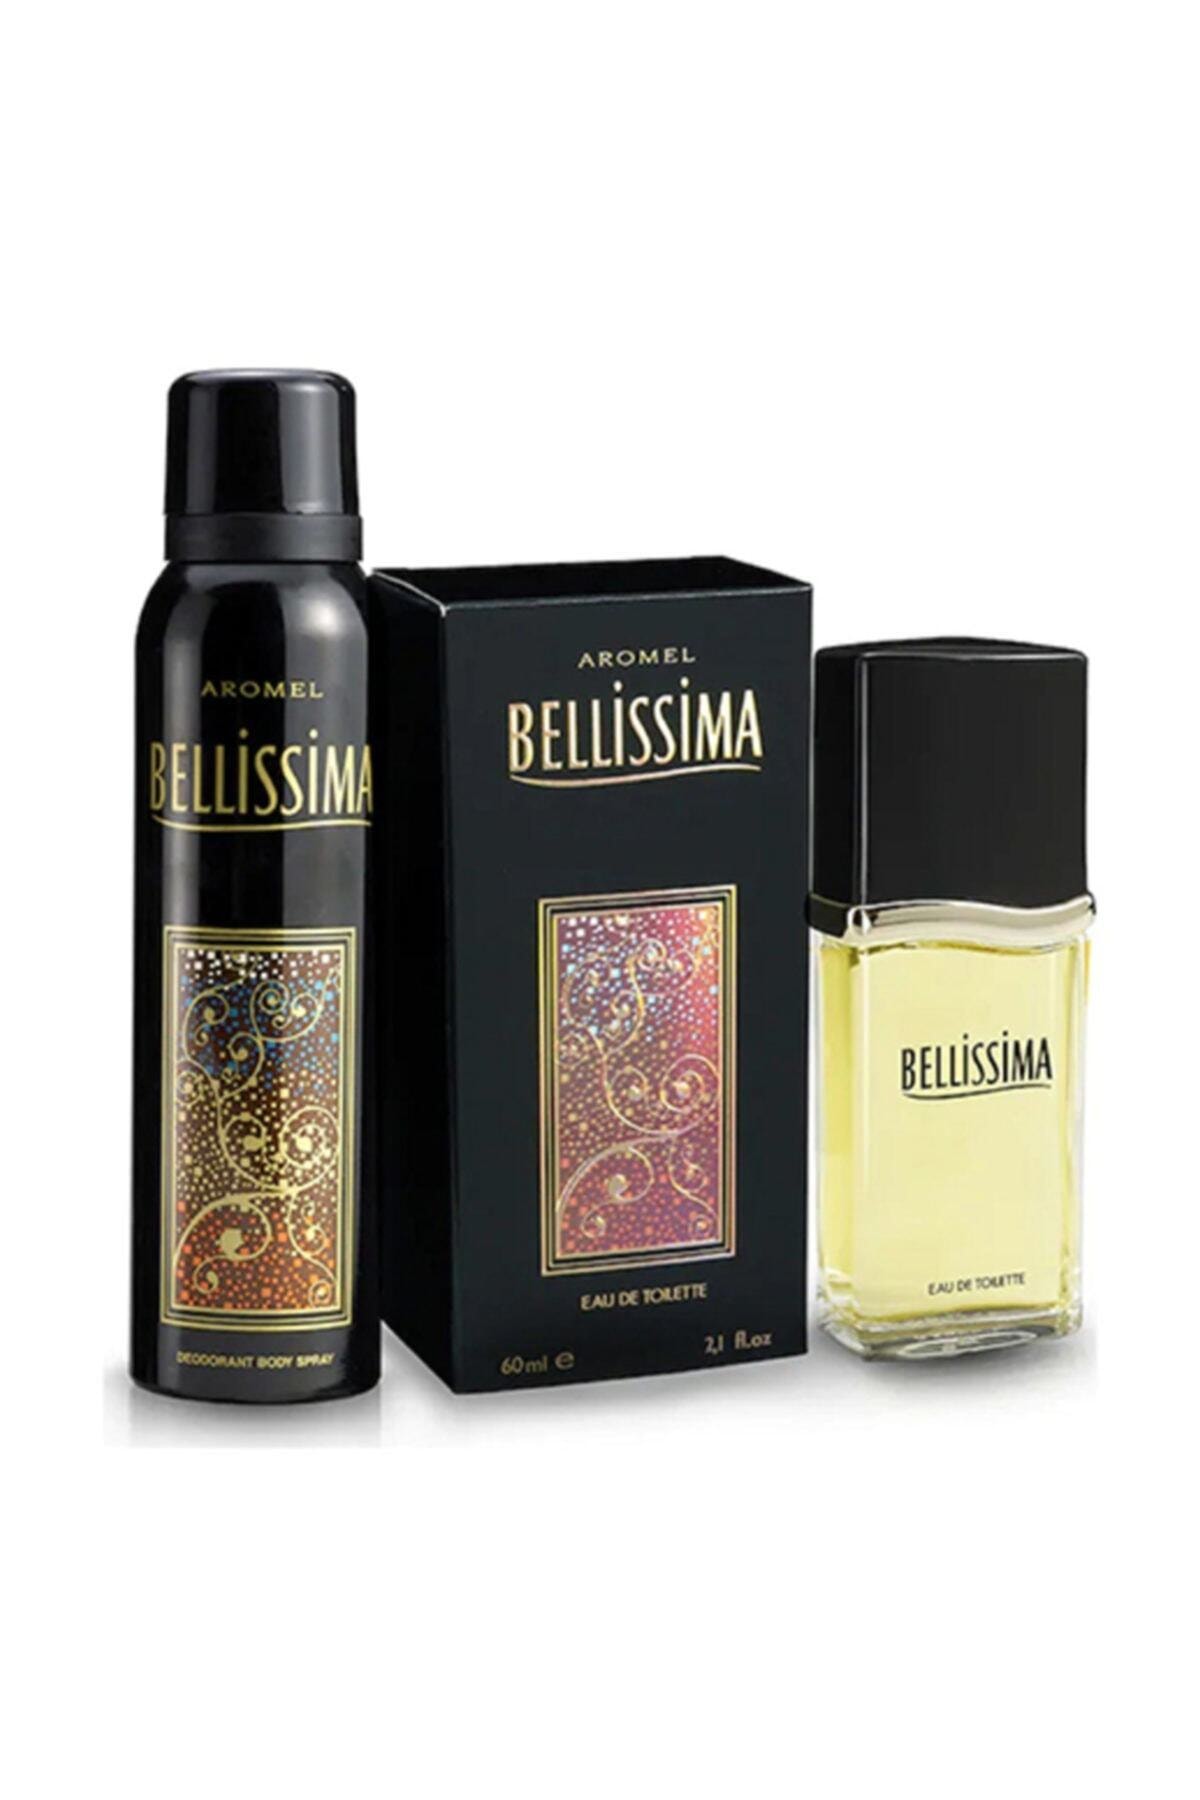 Bellisima Bellissima Edt Parfüm 60ml + Deodorant 150ml